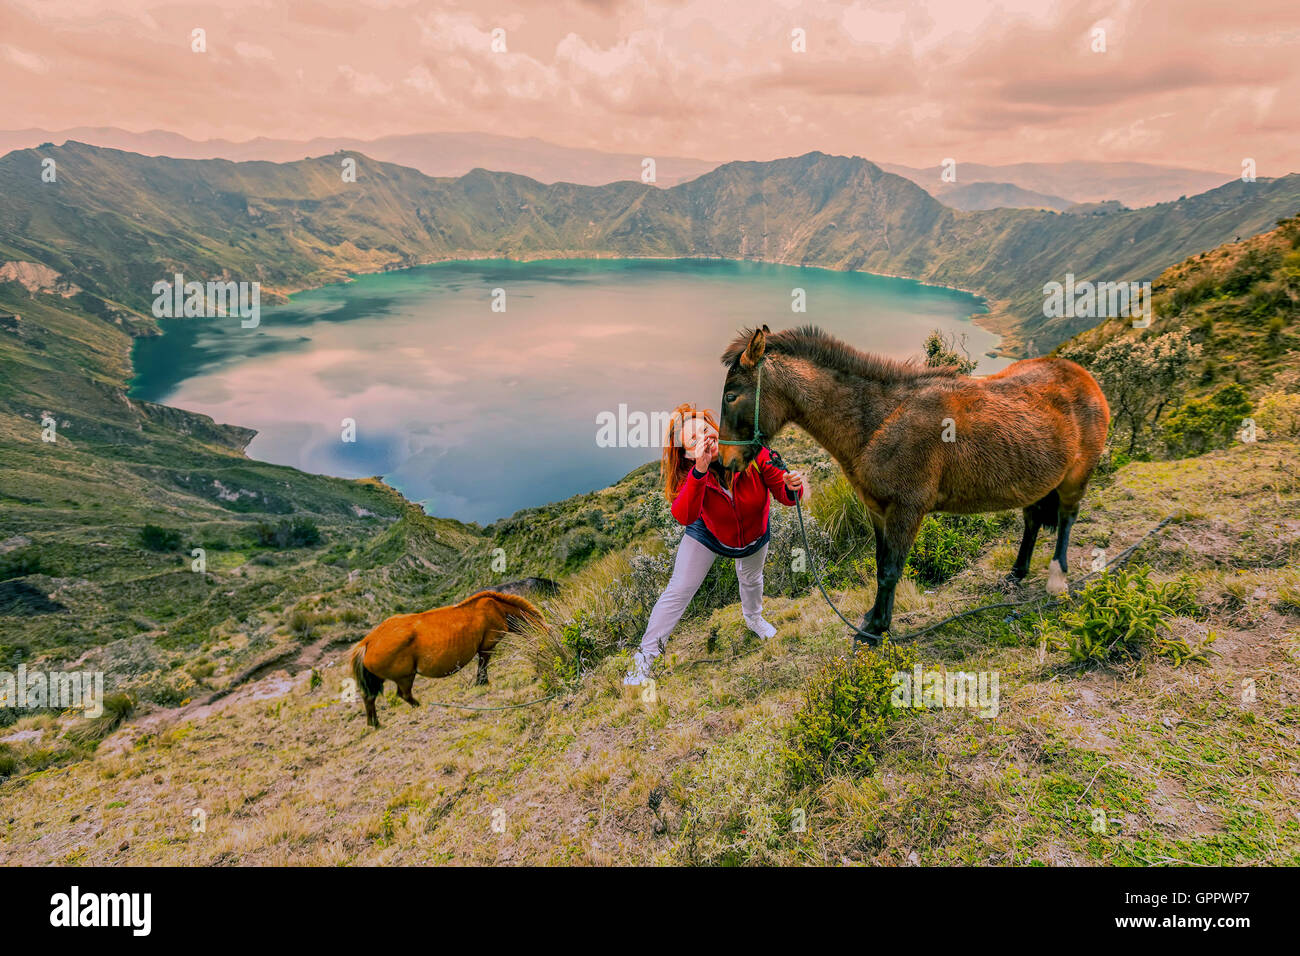 Junge Frau Wandern mit zwei Pferden am Rande des Berges, Quilotoa See im Hintergrund, Ecuador, Südamerika Stockfoto